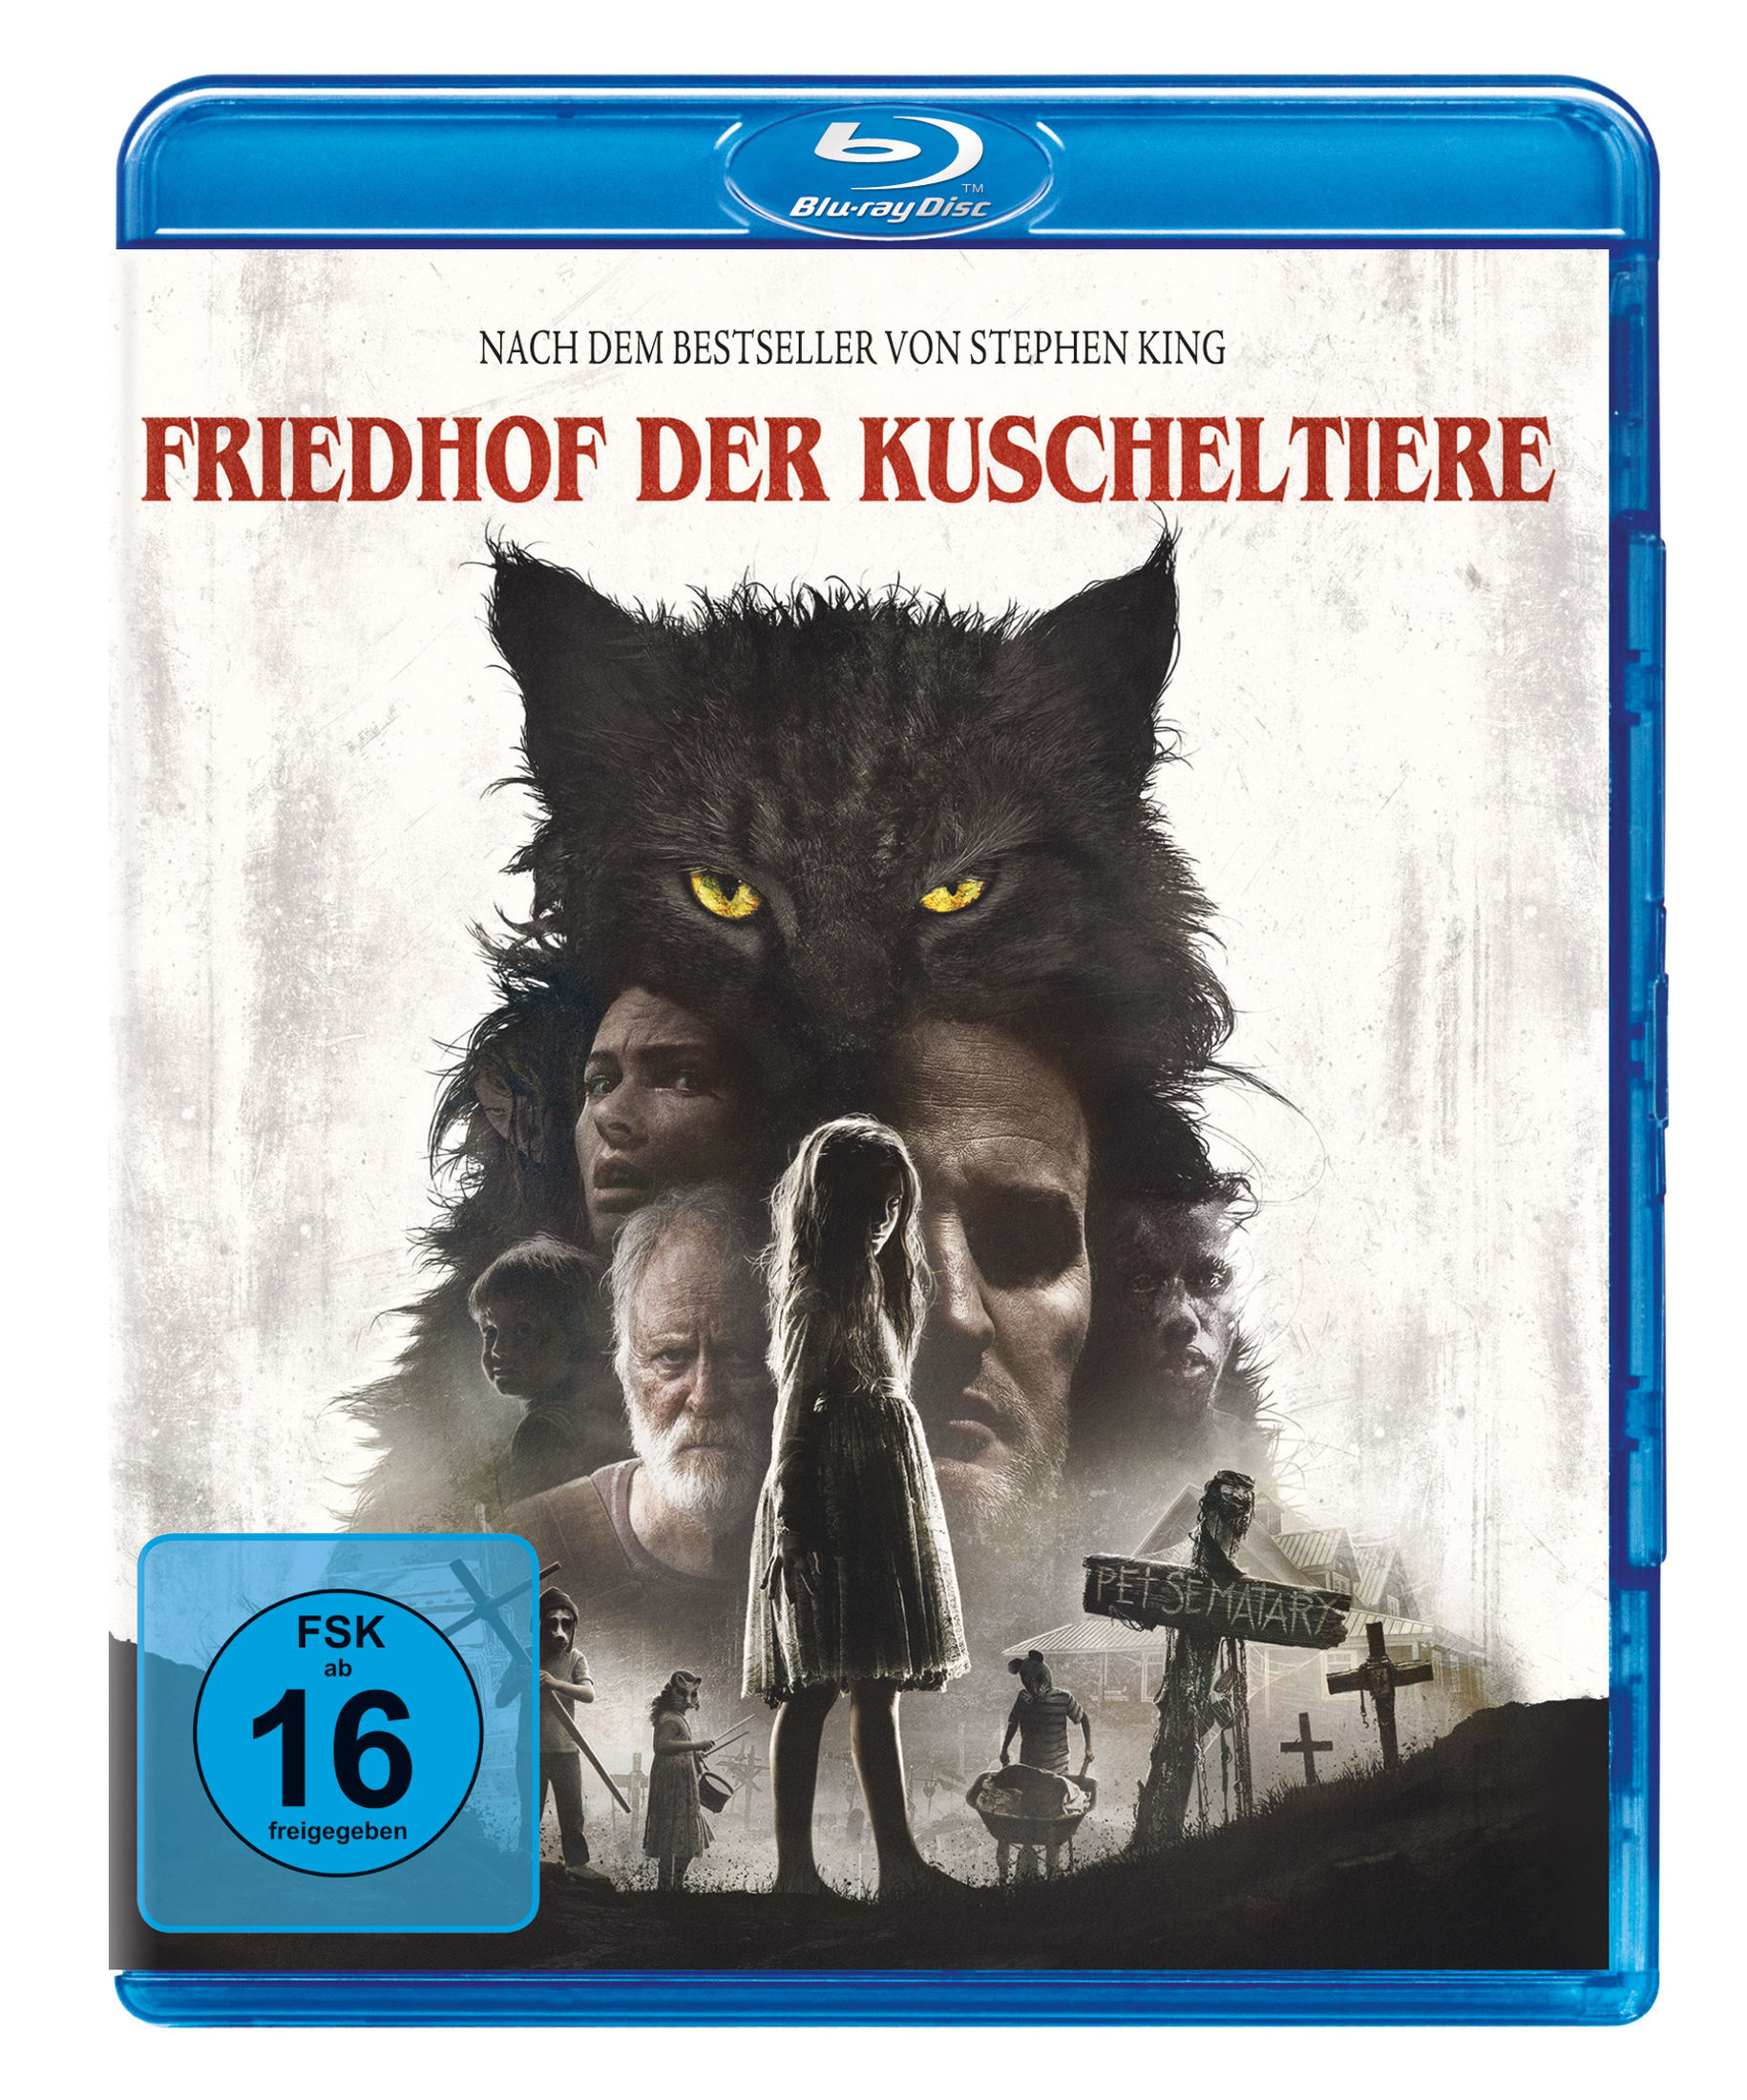 Friedhof der Kuscheltiere 2019 Blu-ray bei Weltbild.de kaufen